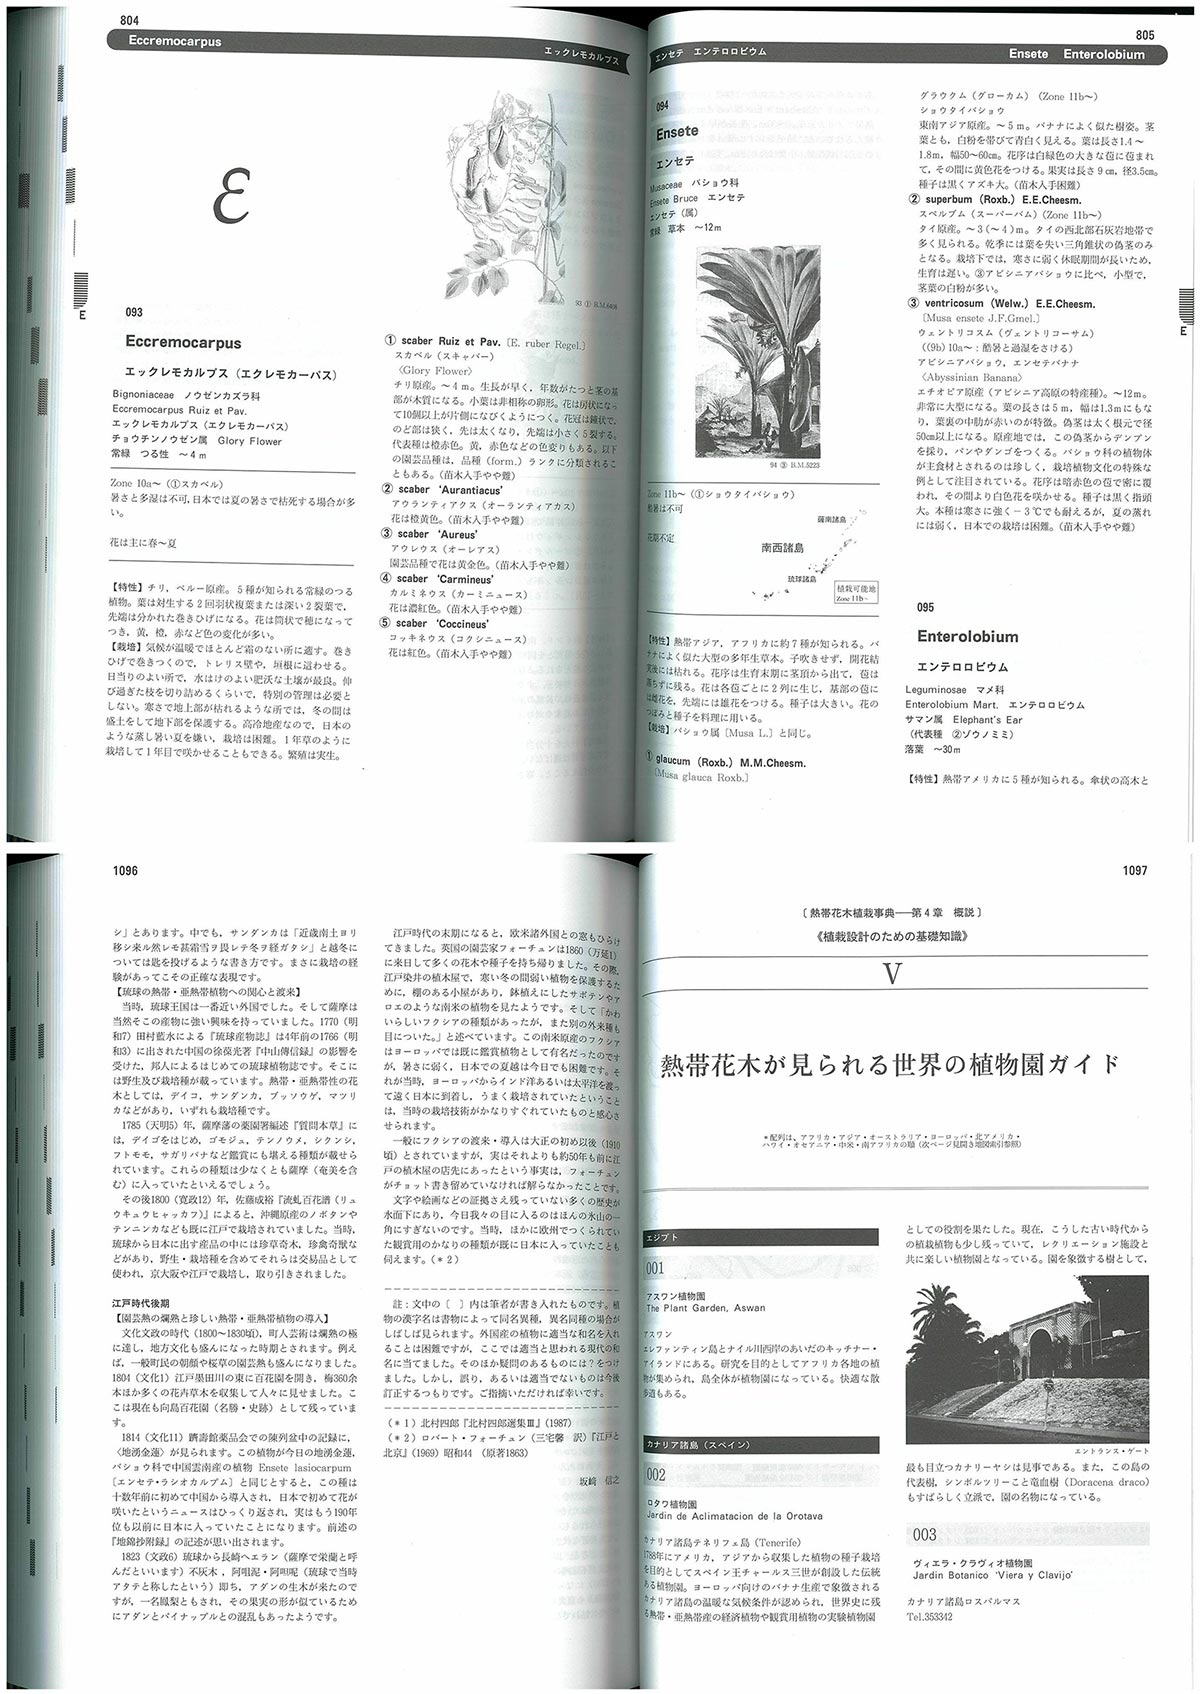 日本で育つ熱帯花木植栽事典　トロピカル・ガーデニング・マニュアル　坂崎 信之著